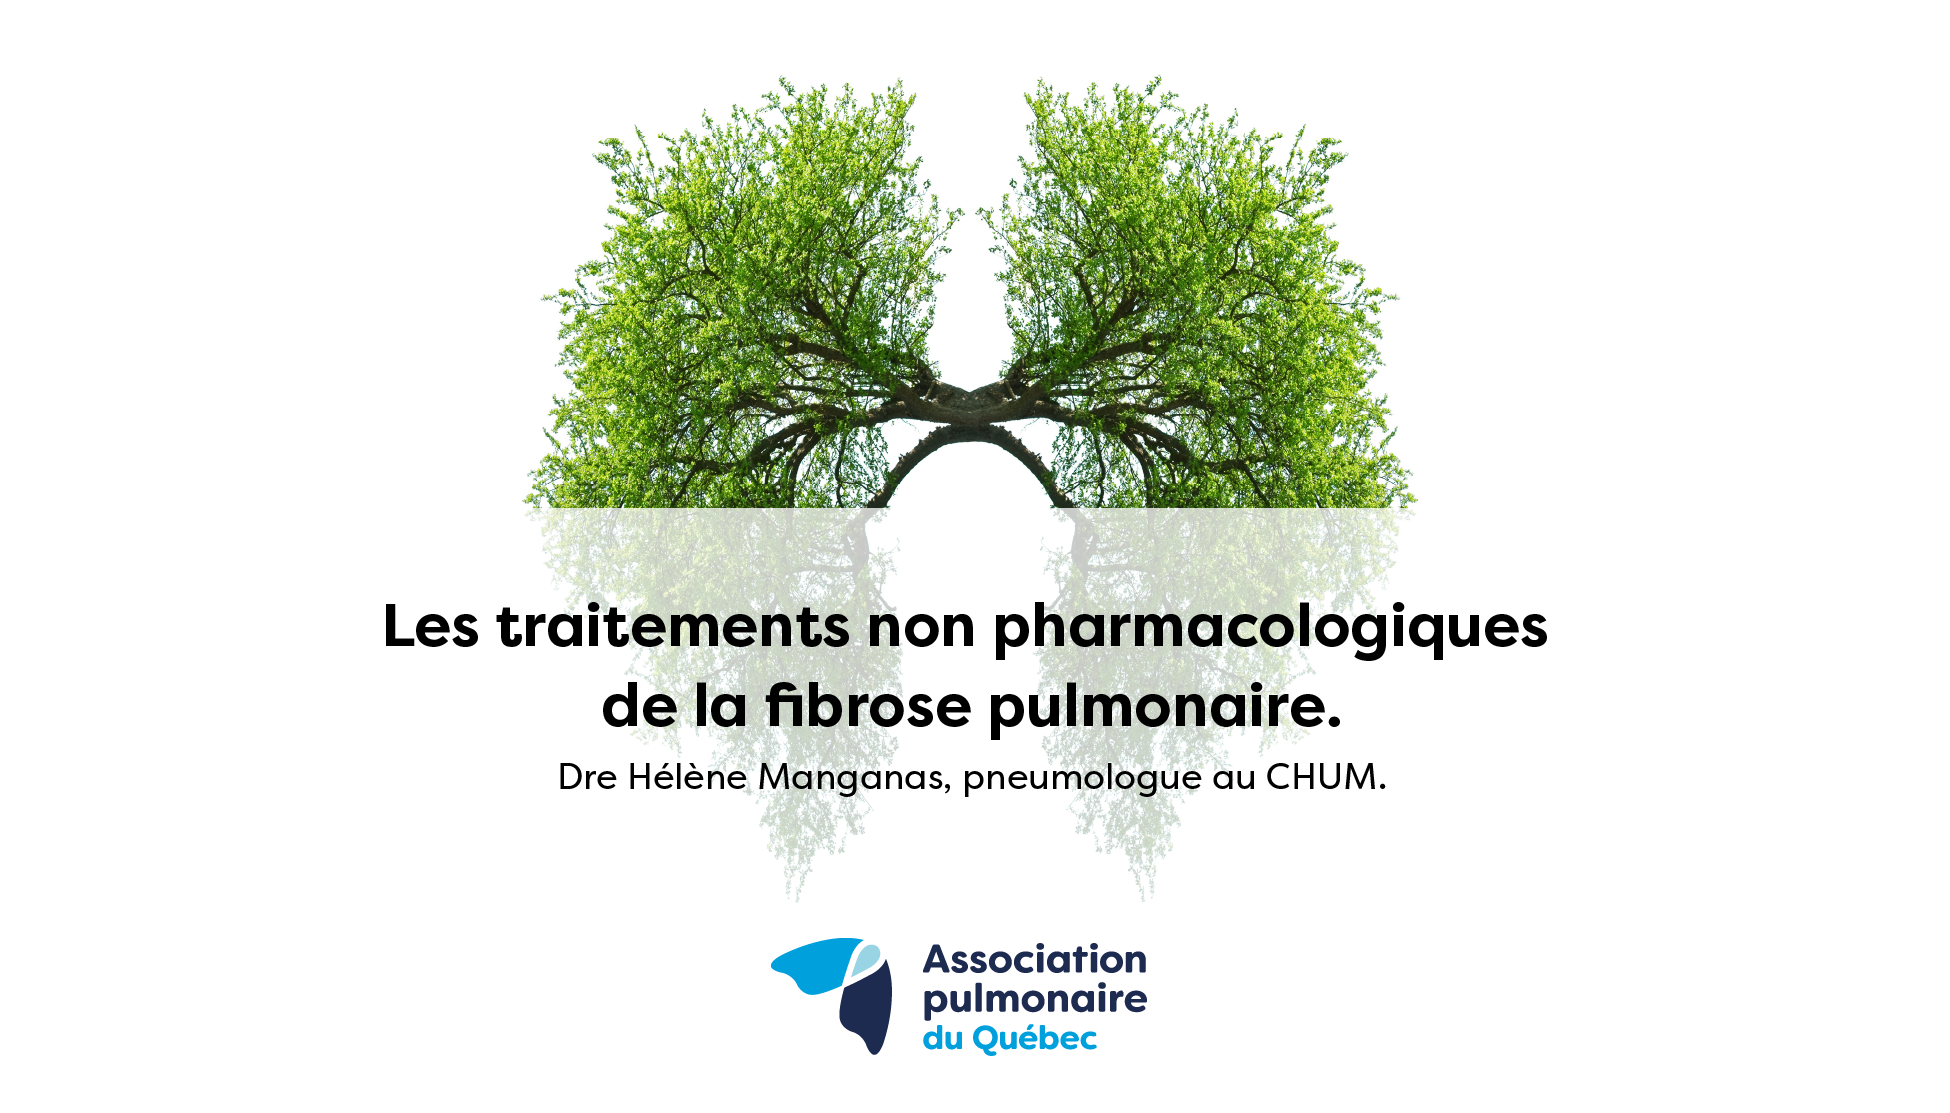 Les traitements non pharmacologiques de la fibrose pulmonaire